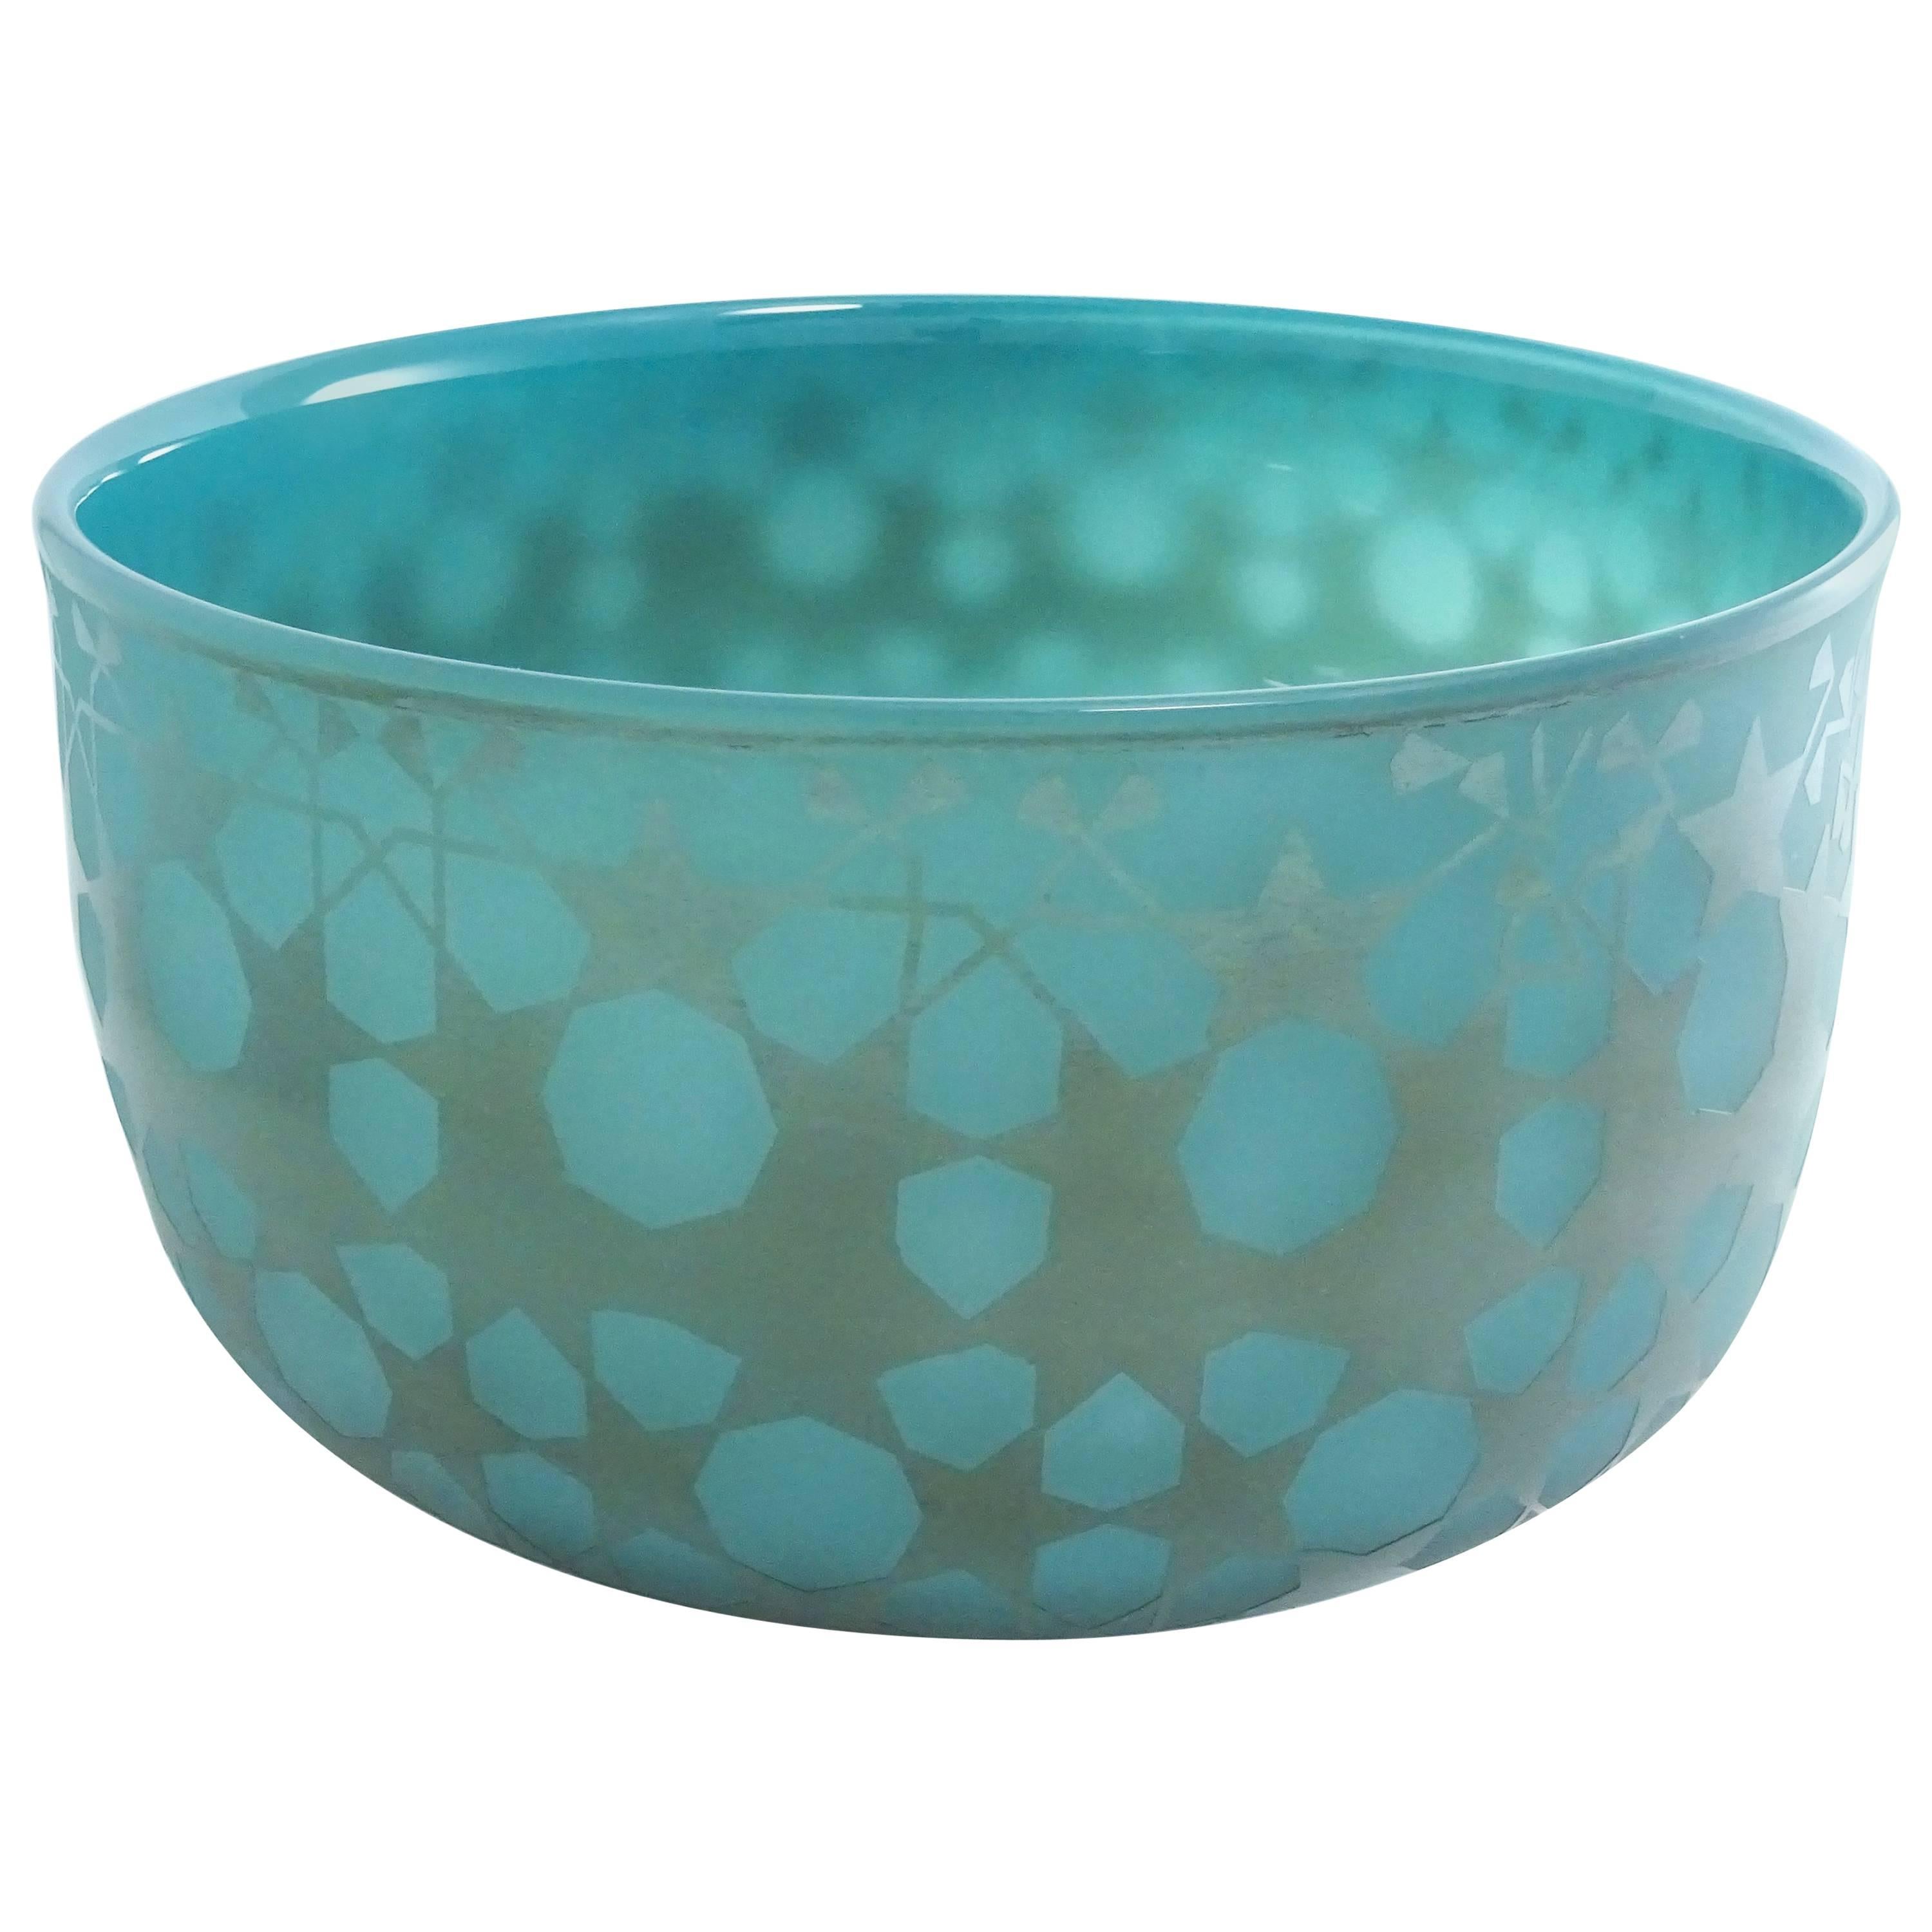 Ocean Green Blown Glass Bowl by Sabine Lintzen For Sale